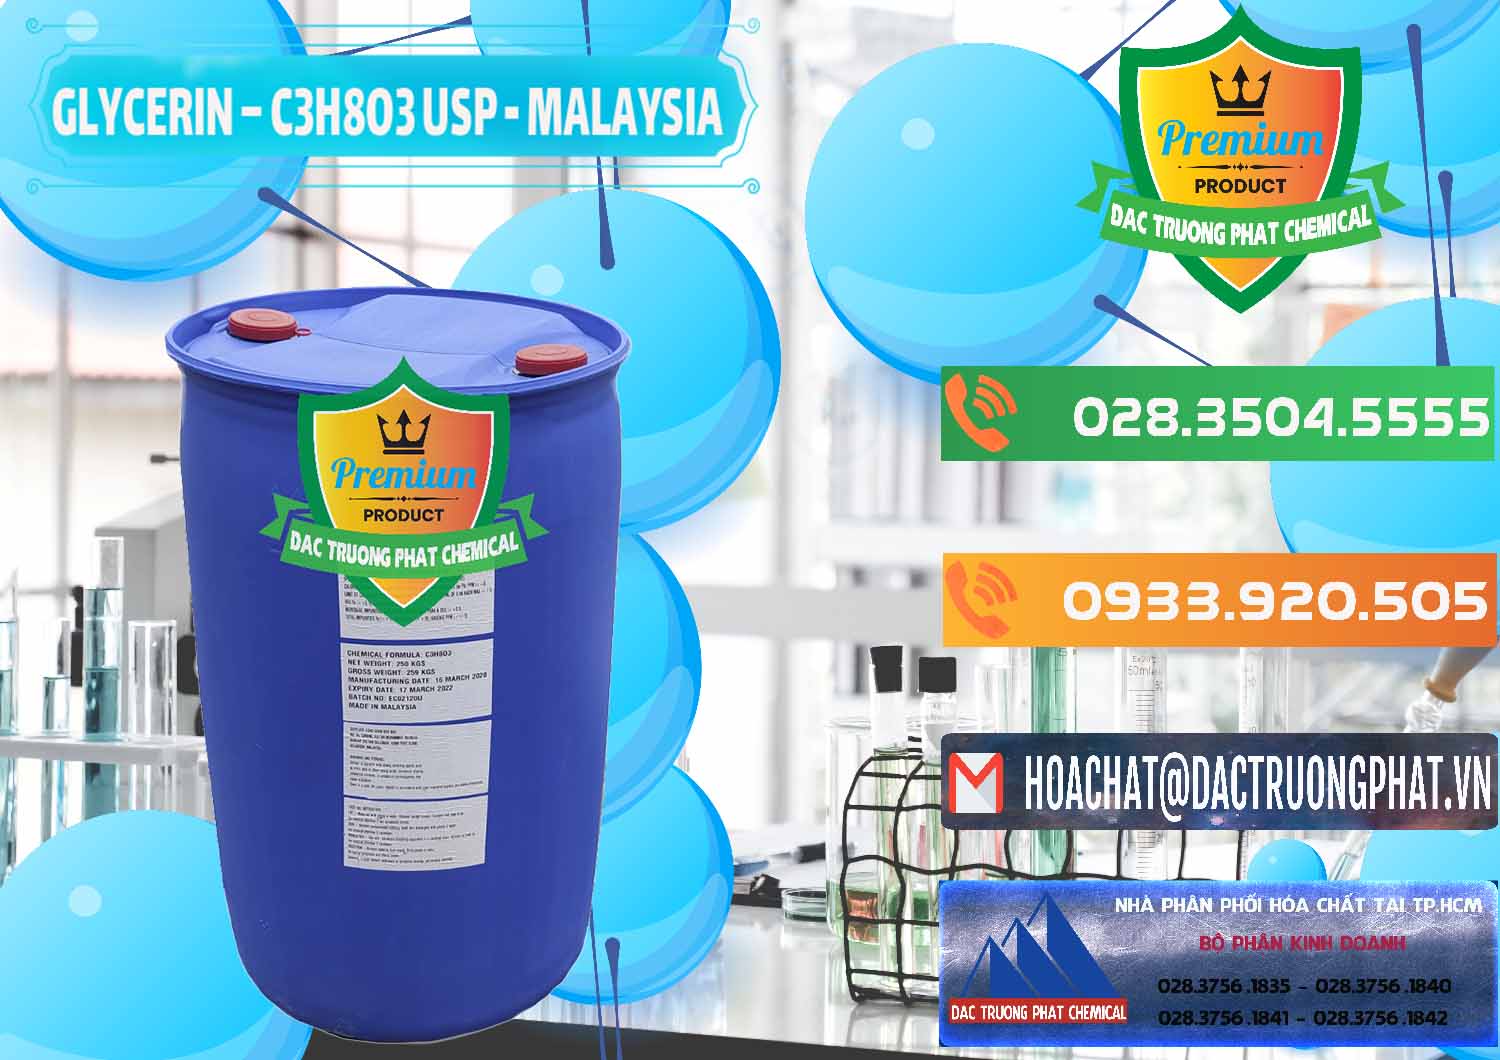 Công ty chuyên kinh doanh & bán Glycerin – C3H8O3 USP Malaysia - 0233 - Cty bán & cung cấp hóa chất tại TP.HCM - hoachatxulynuoc.com.vn